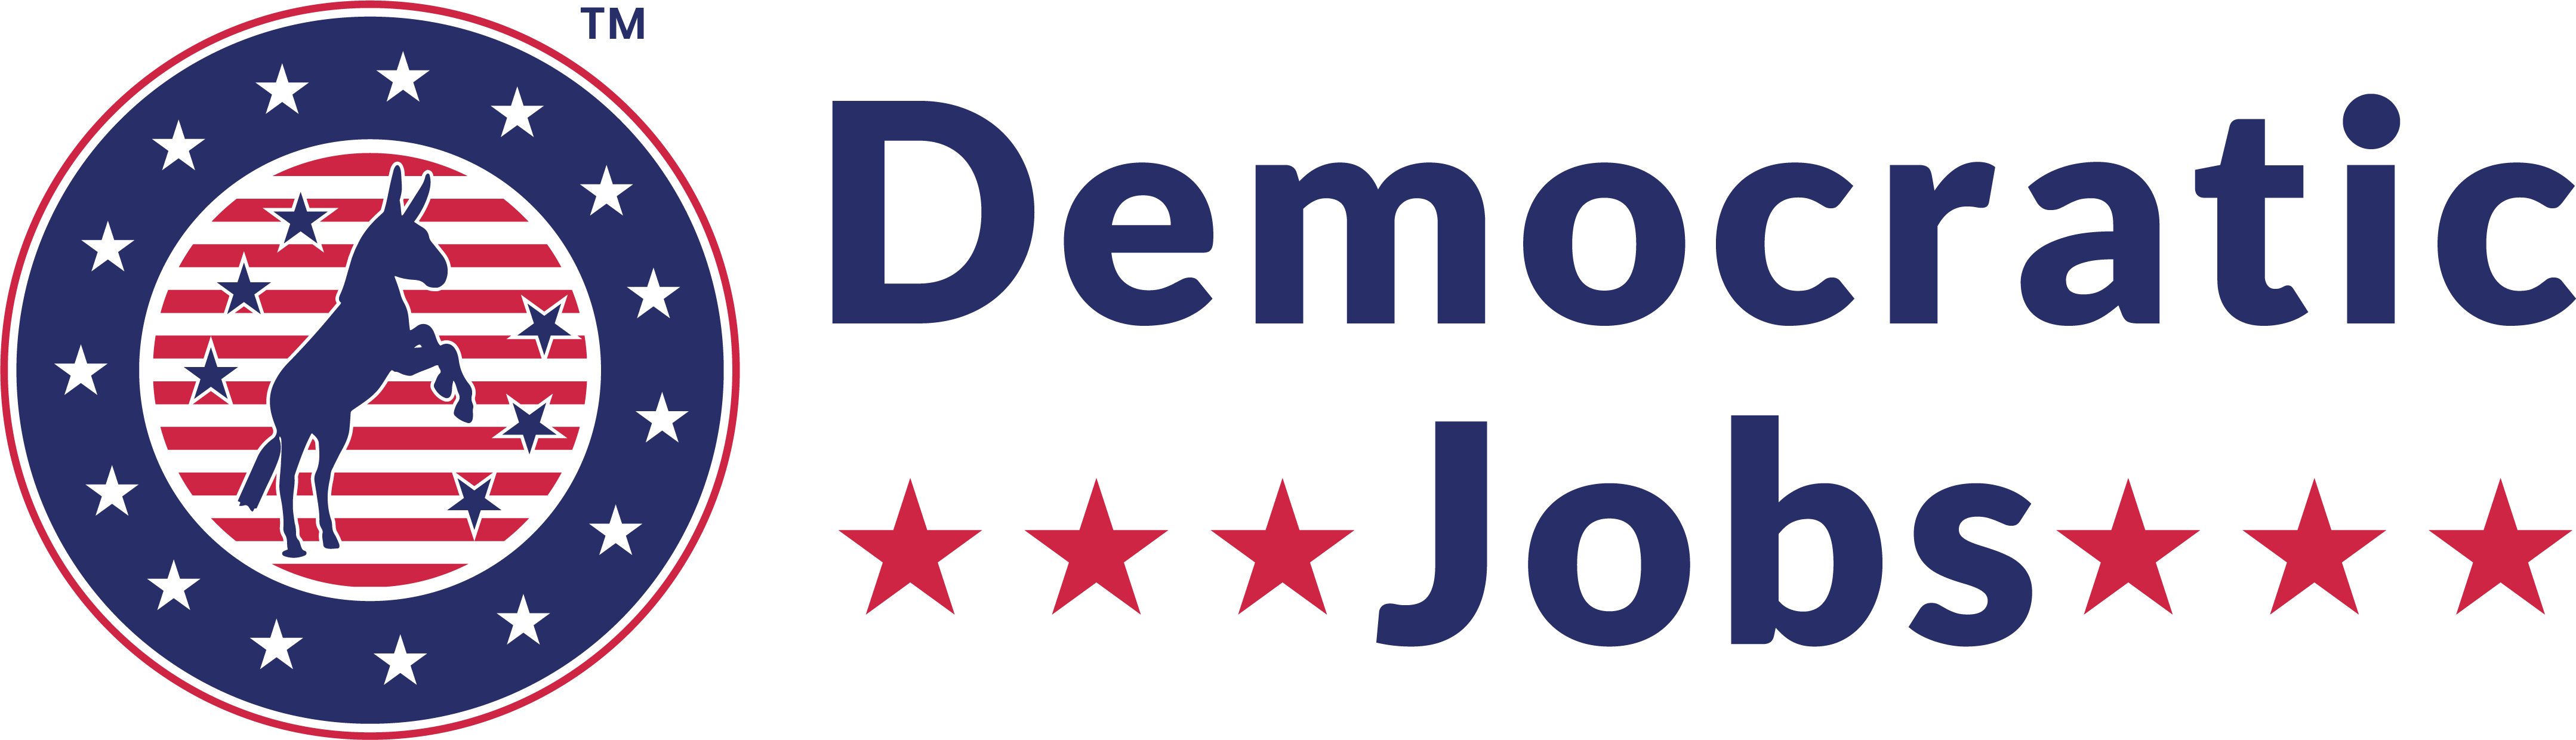 democratic services job description